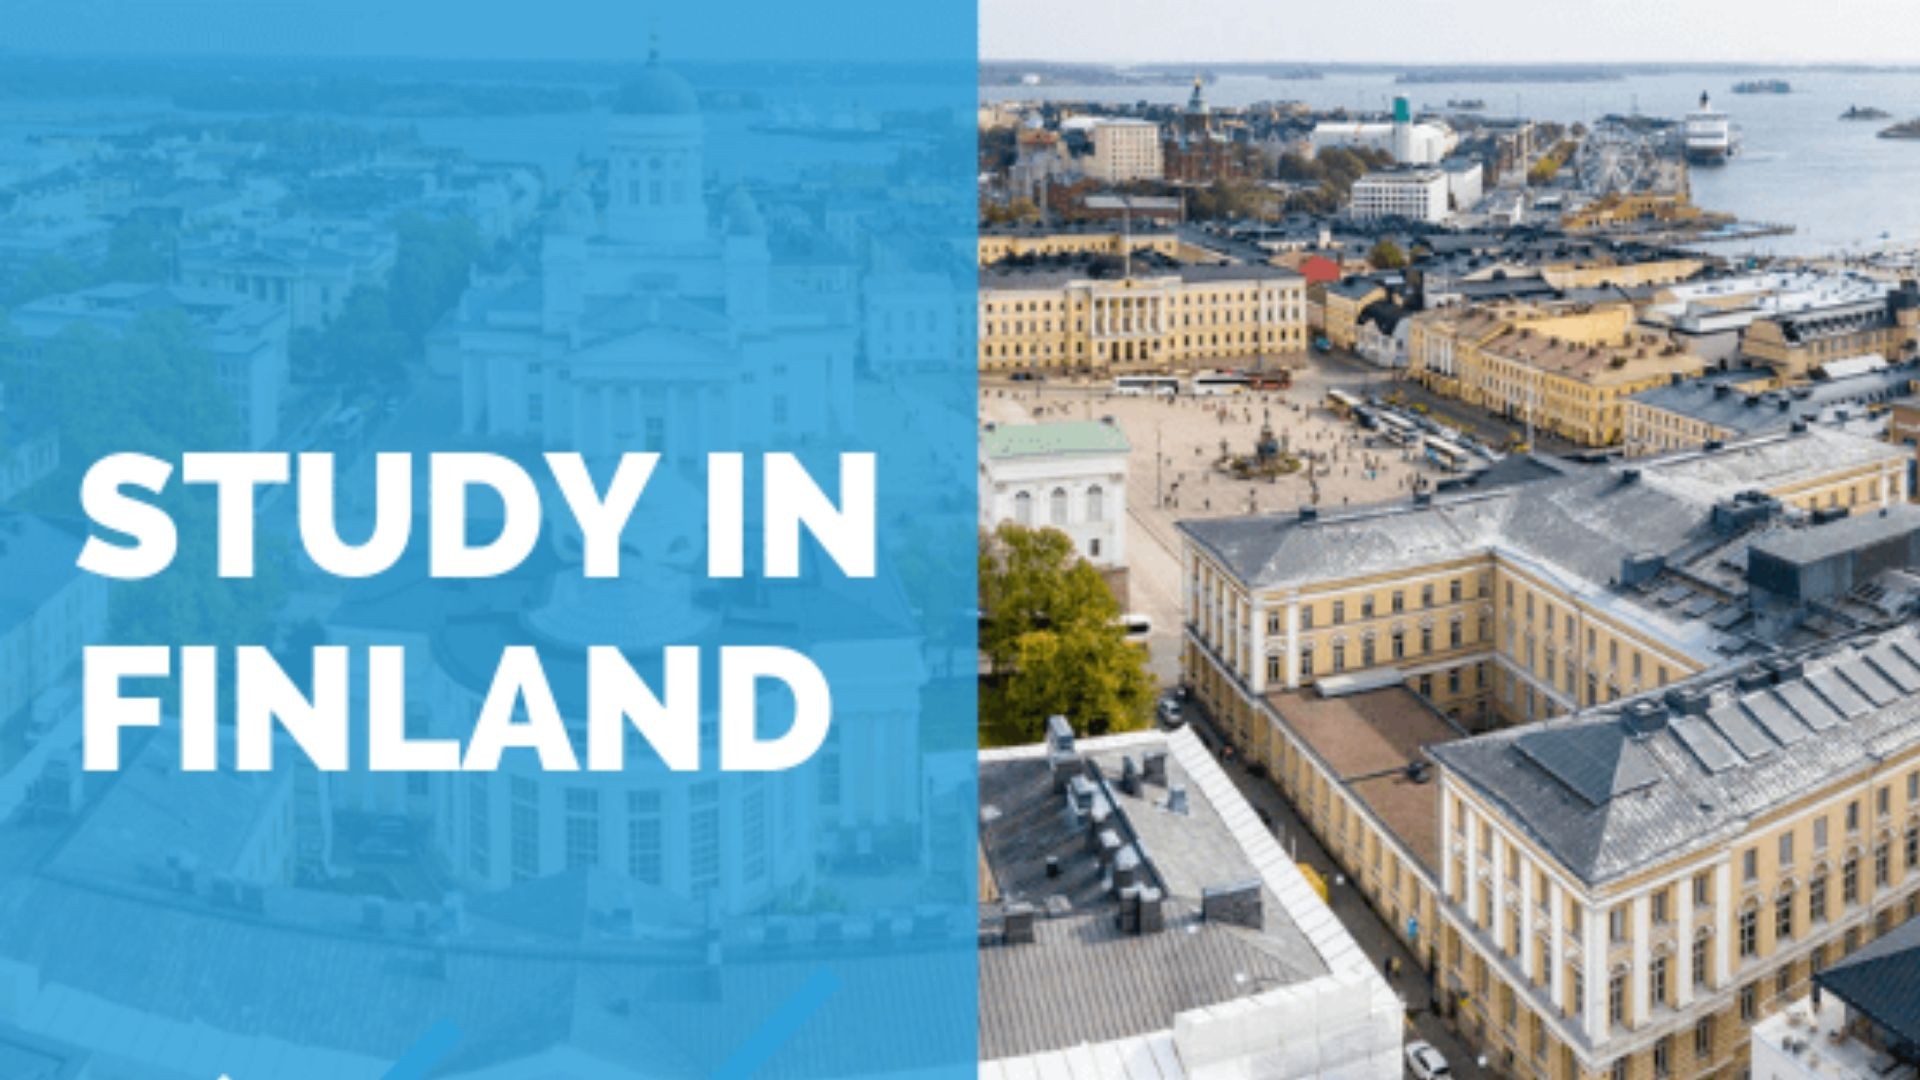 Chi phí du học Phần Lan là bao nhiêu?